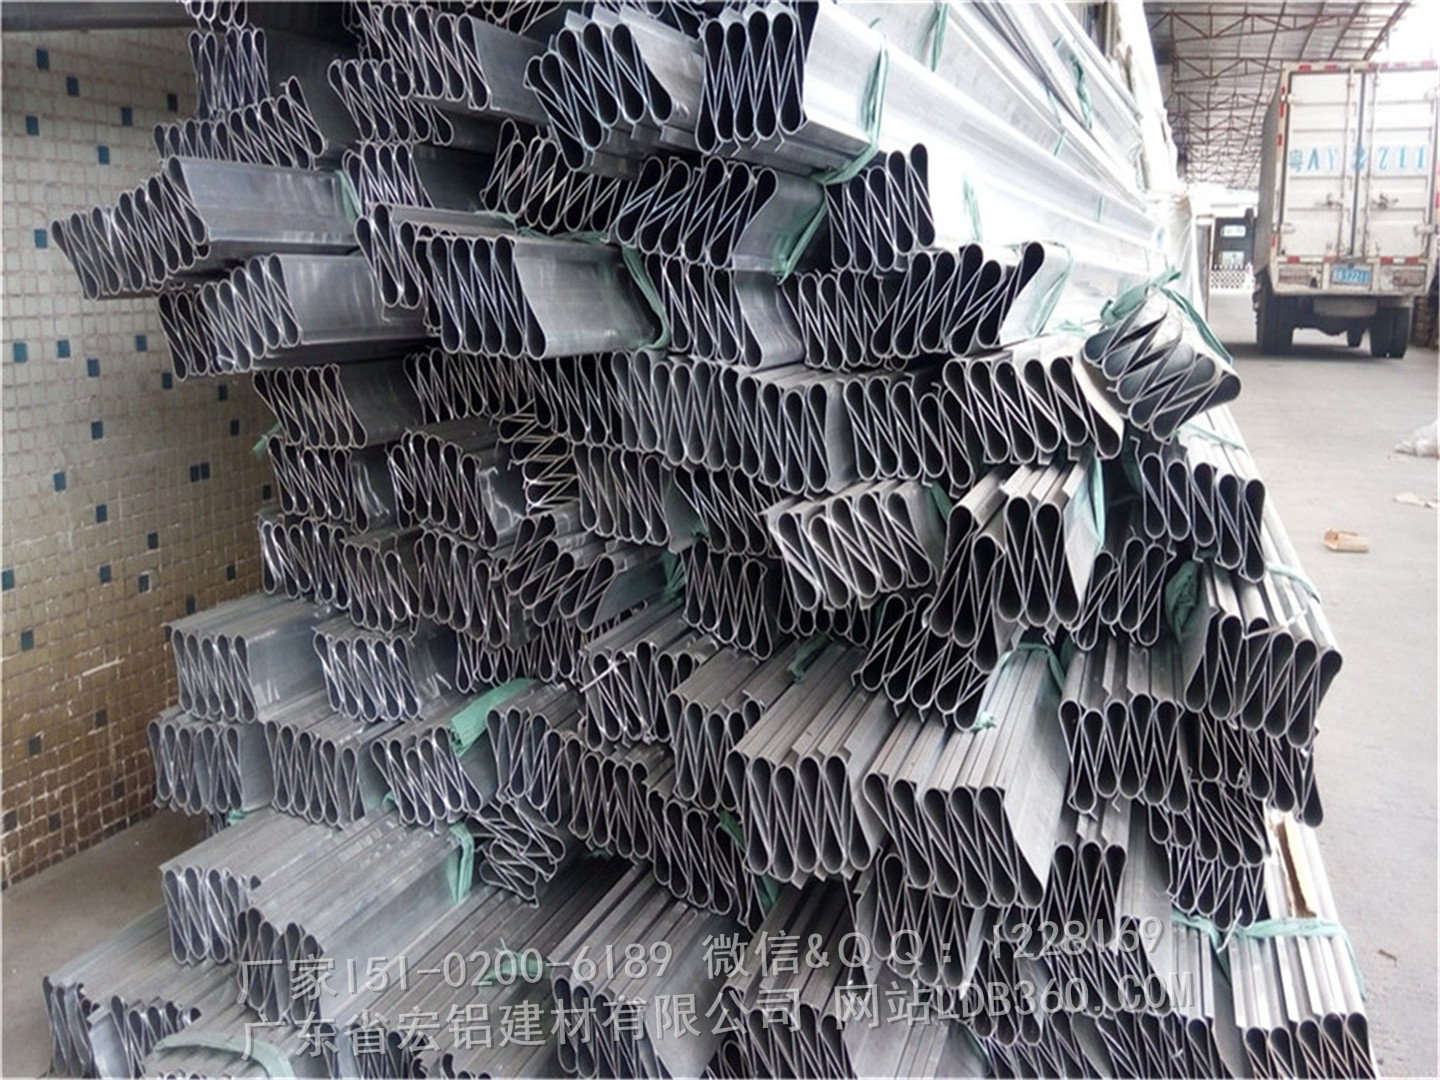 广州市装饰铝挂片天花厂家供应装饰铝挂片天花，厂家定制铝挂片吊顶天花，铝合金挂板材料